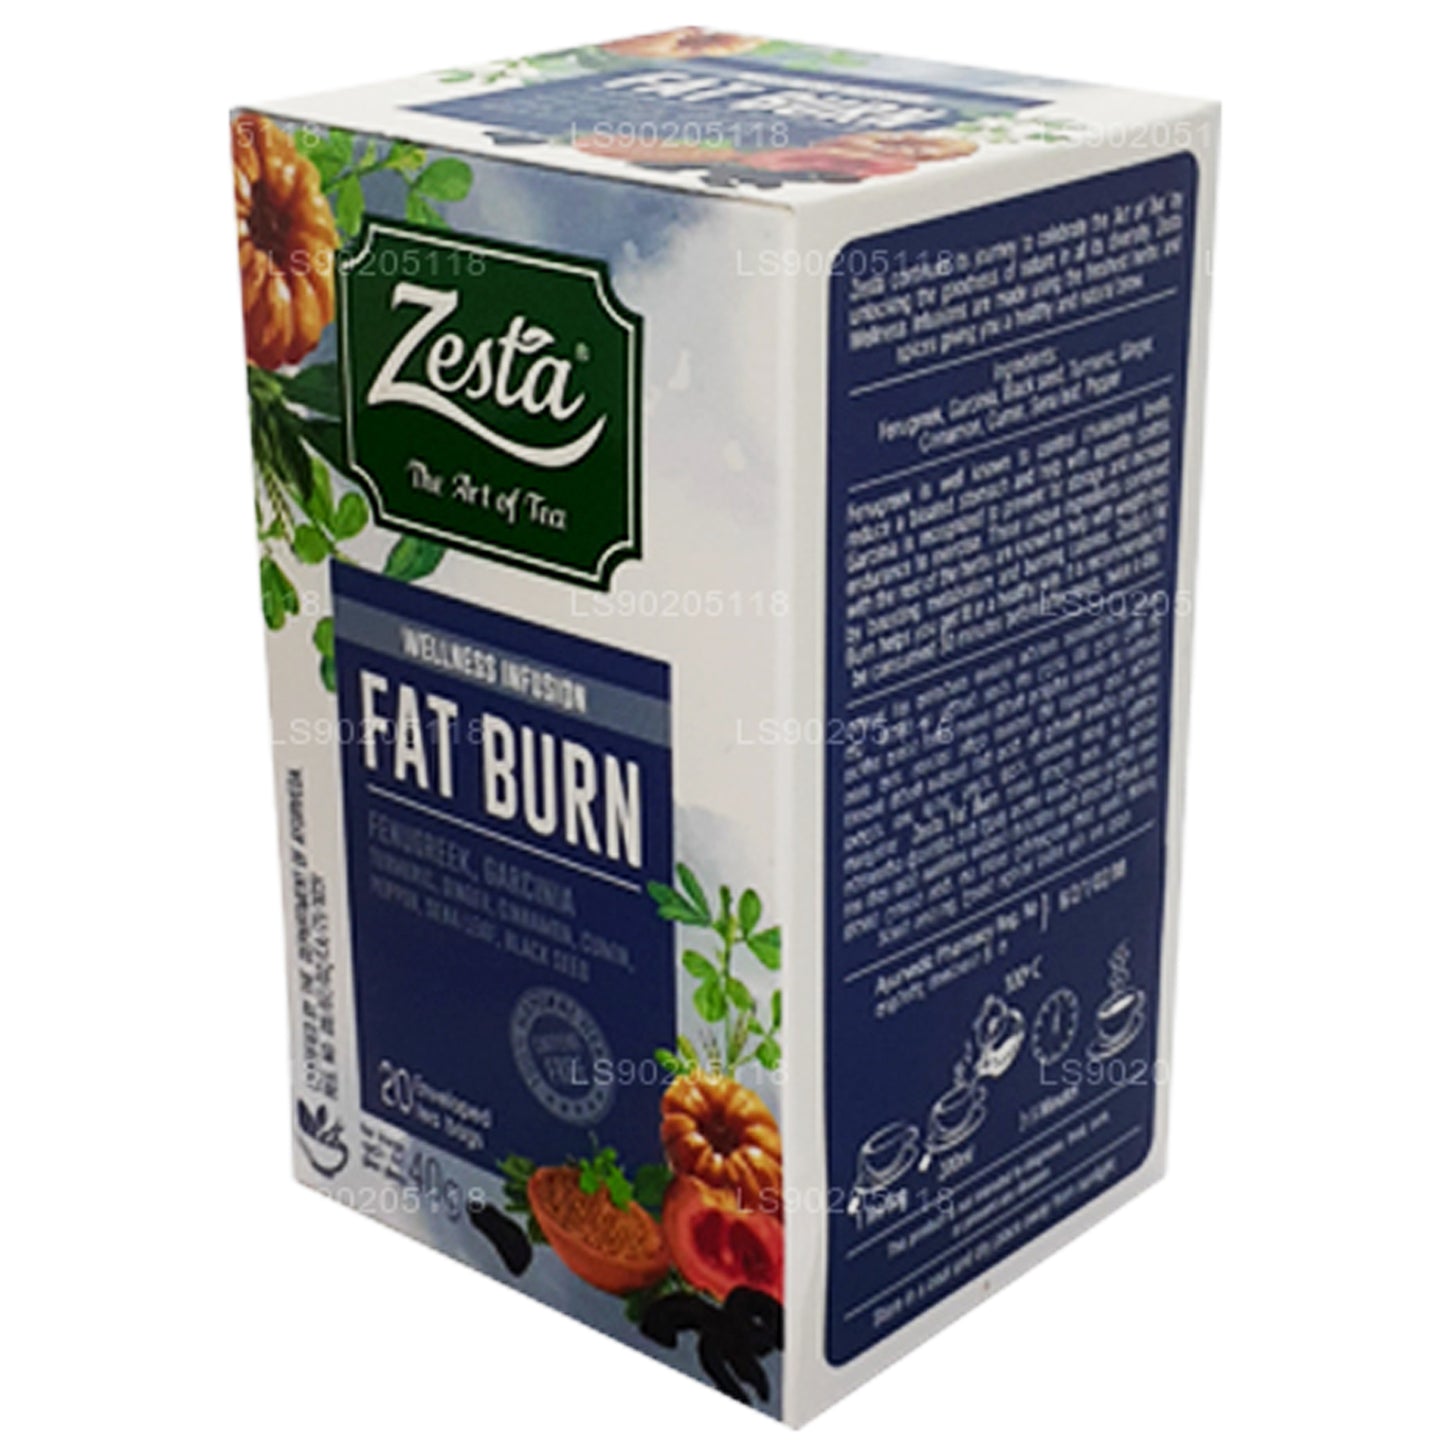 Zesta Fat Burn (40g) 20 Tea Bags